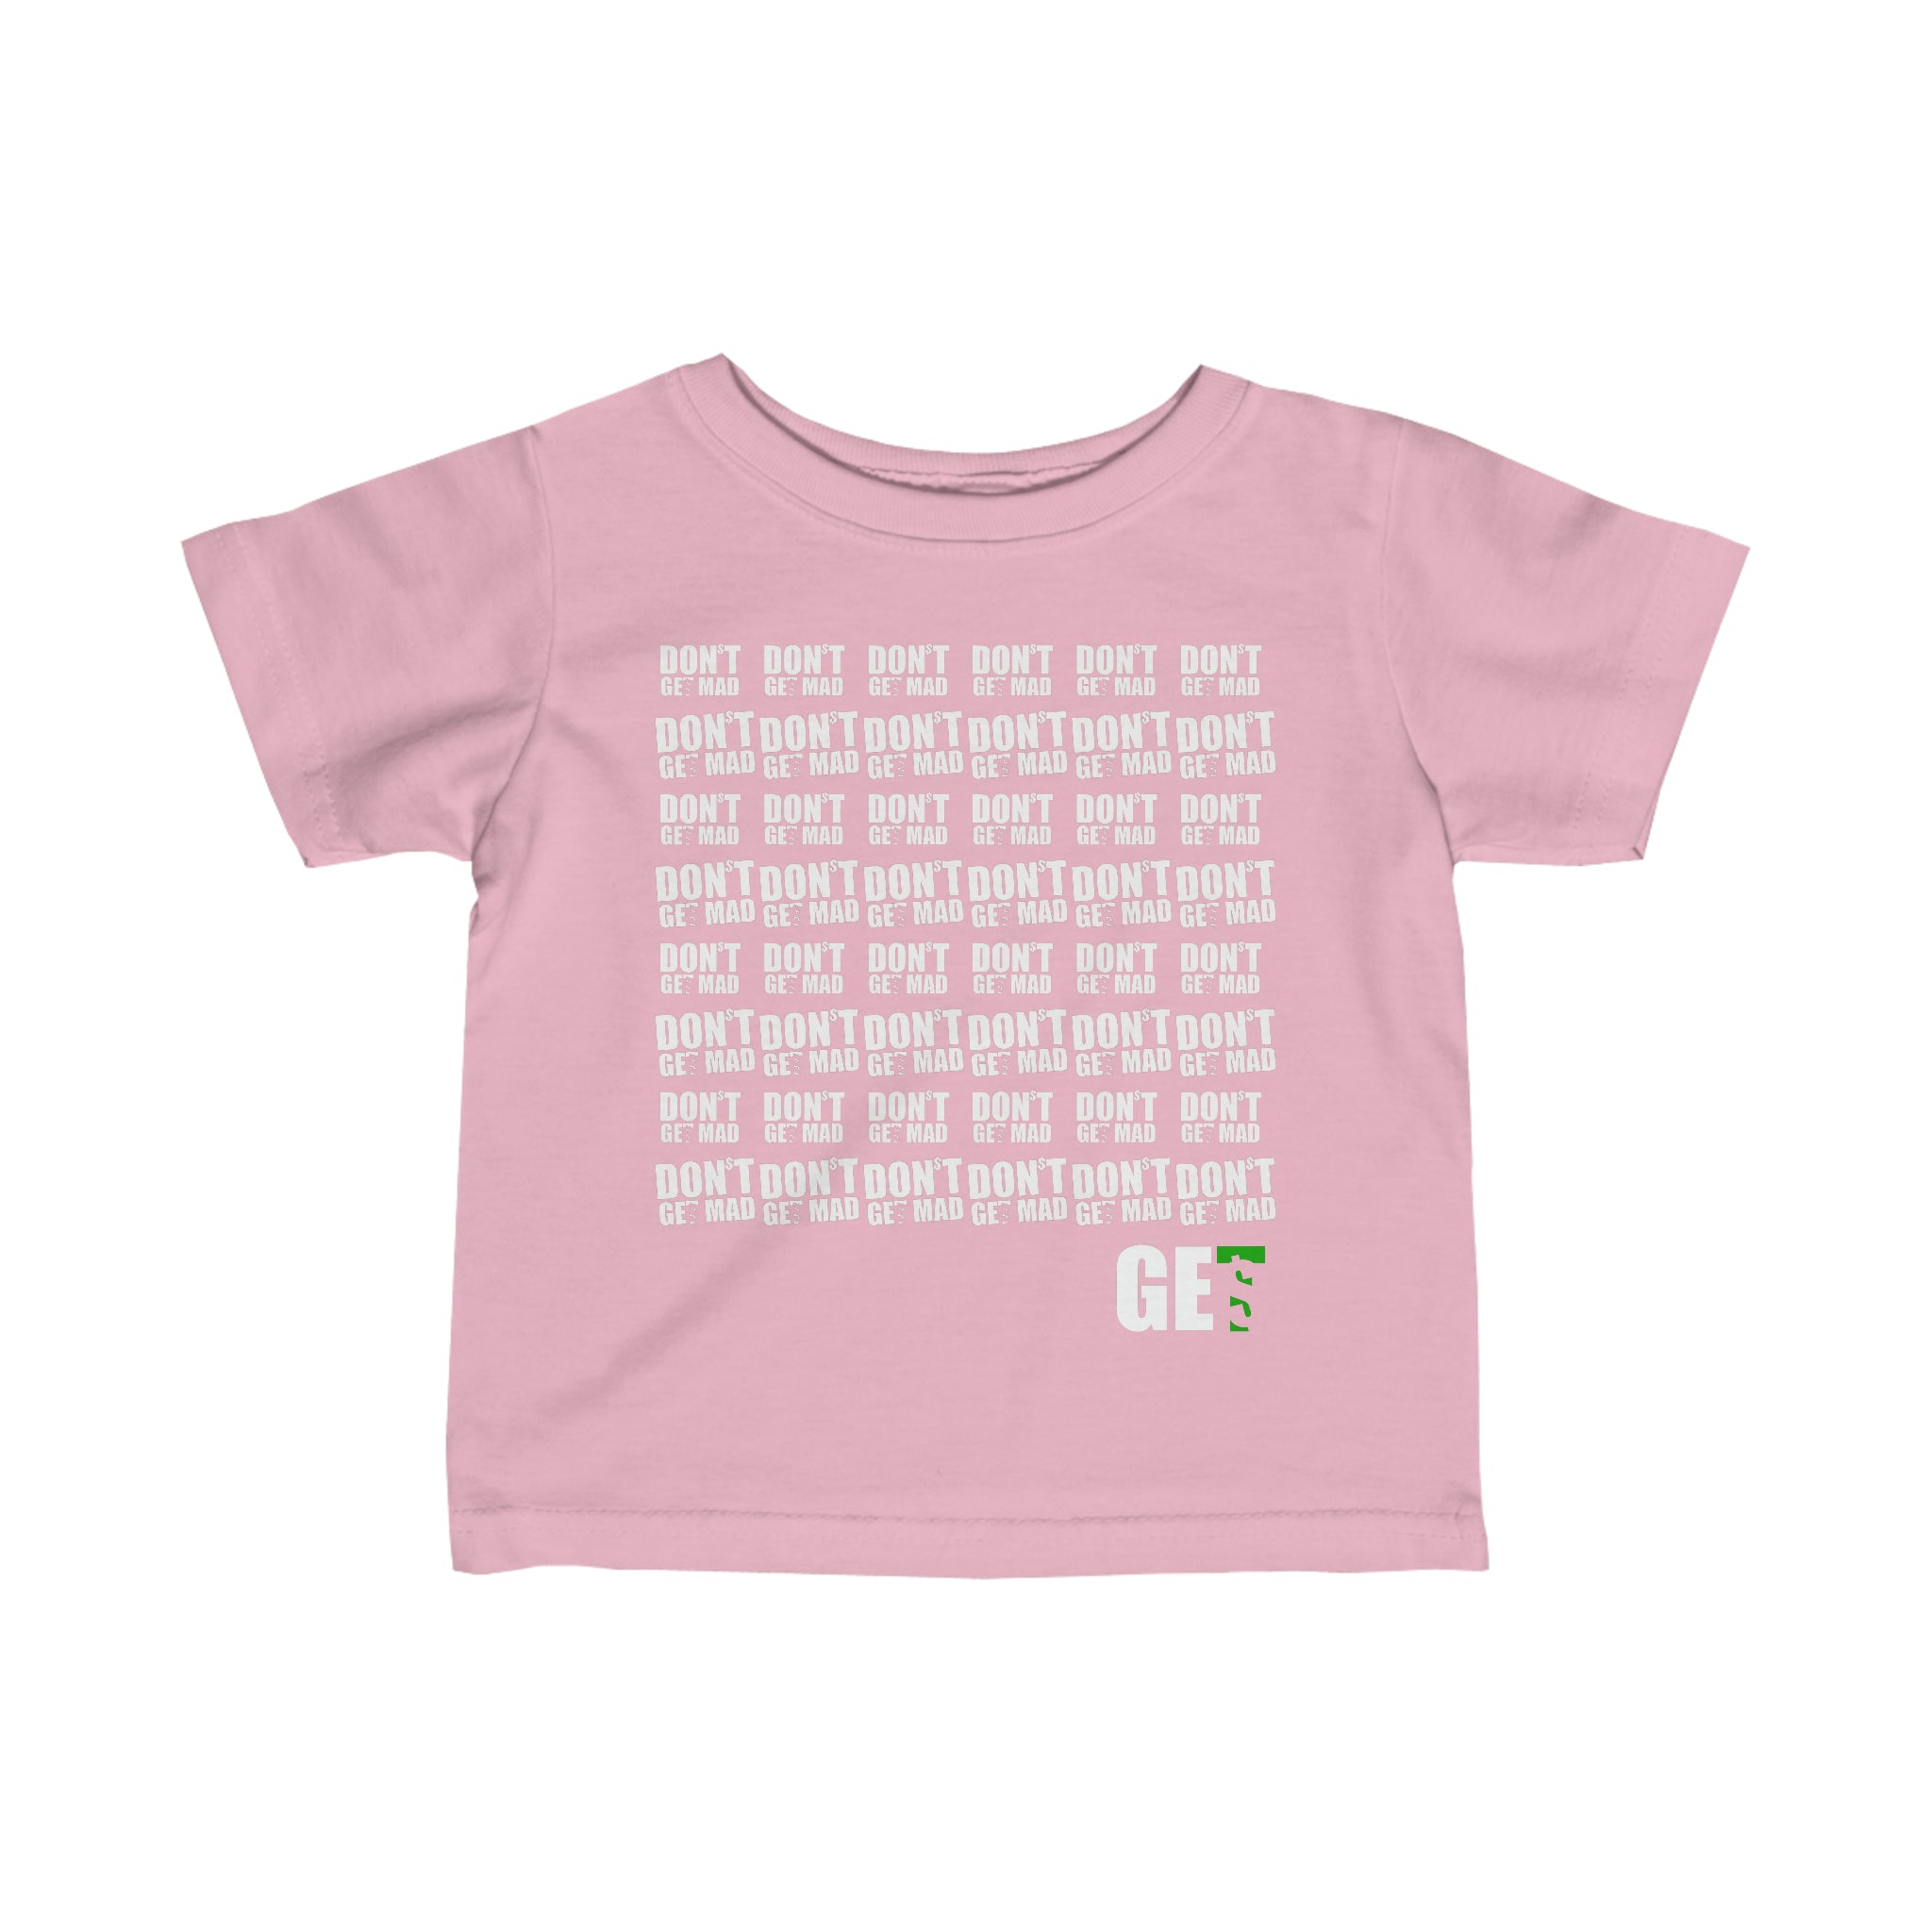 GET$ Infant Shirt